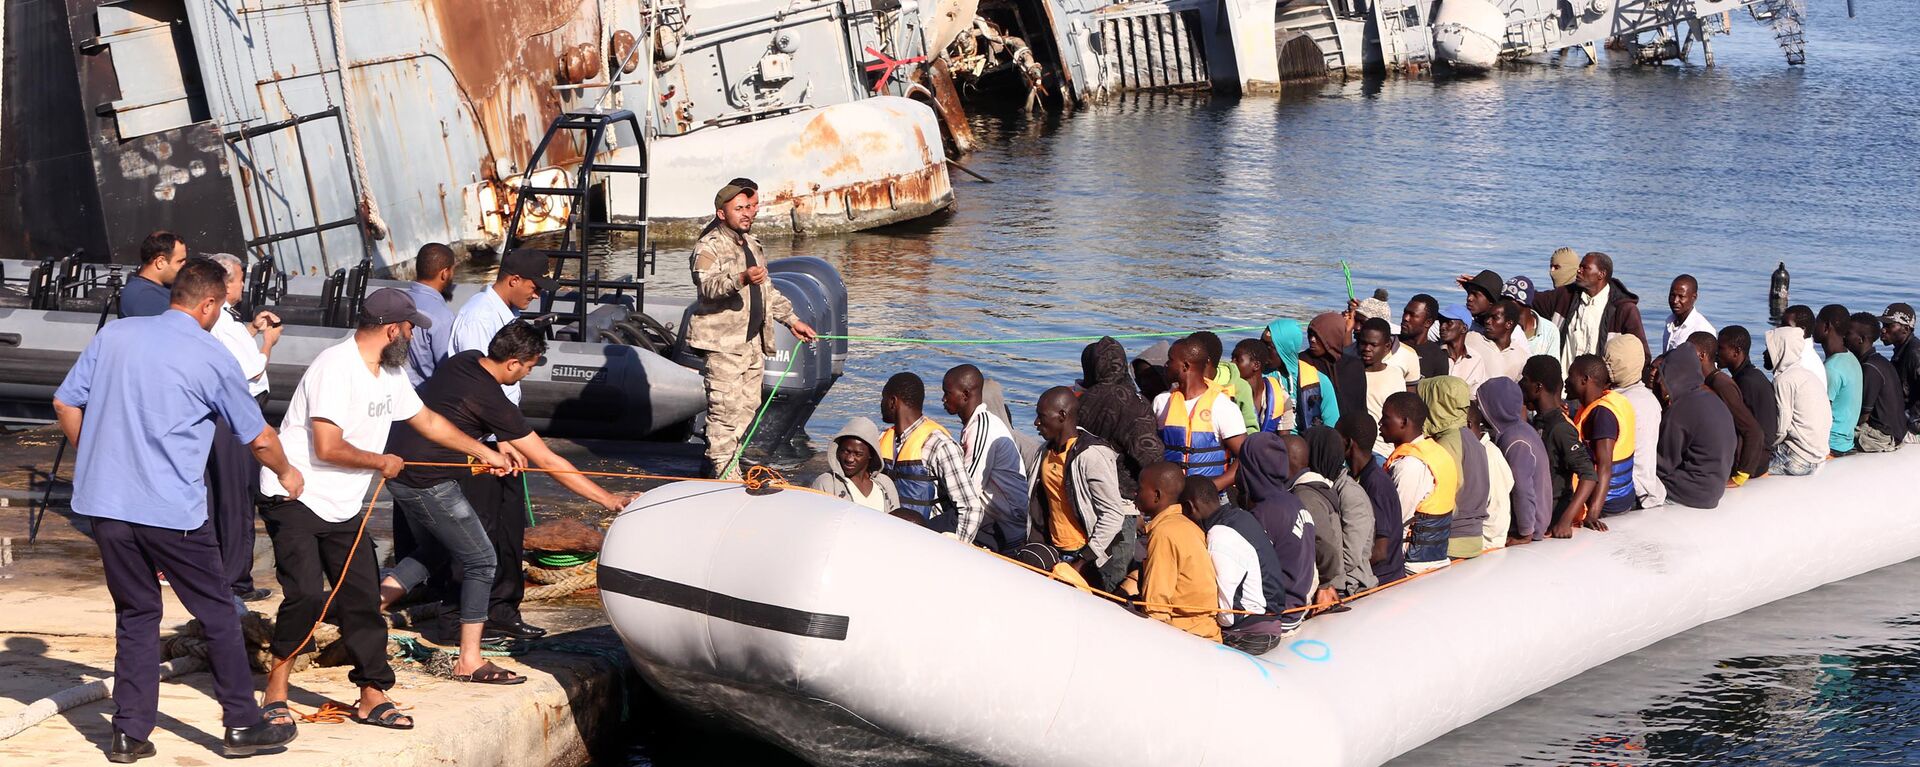  خفر السواحل الليبي يقوم بسحب قارب يحمل مهاجرين أفارقة، تم إنقاذهم أثناء محاولتهم الوصول إلى أوروبا بطريقة غير شرعية، في قاعدة بحرية بالقرب من العاصمة طرابلس في 29 سبتمبر/ أيلول 2015. - سبوتنيك عربي, 1920, 28.06.2023